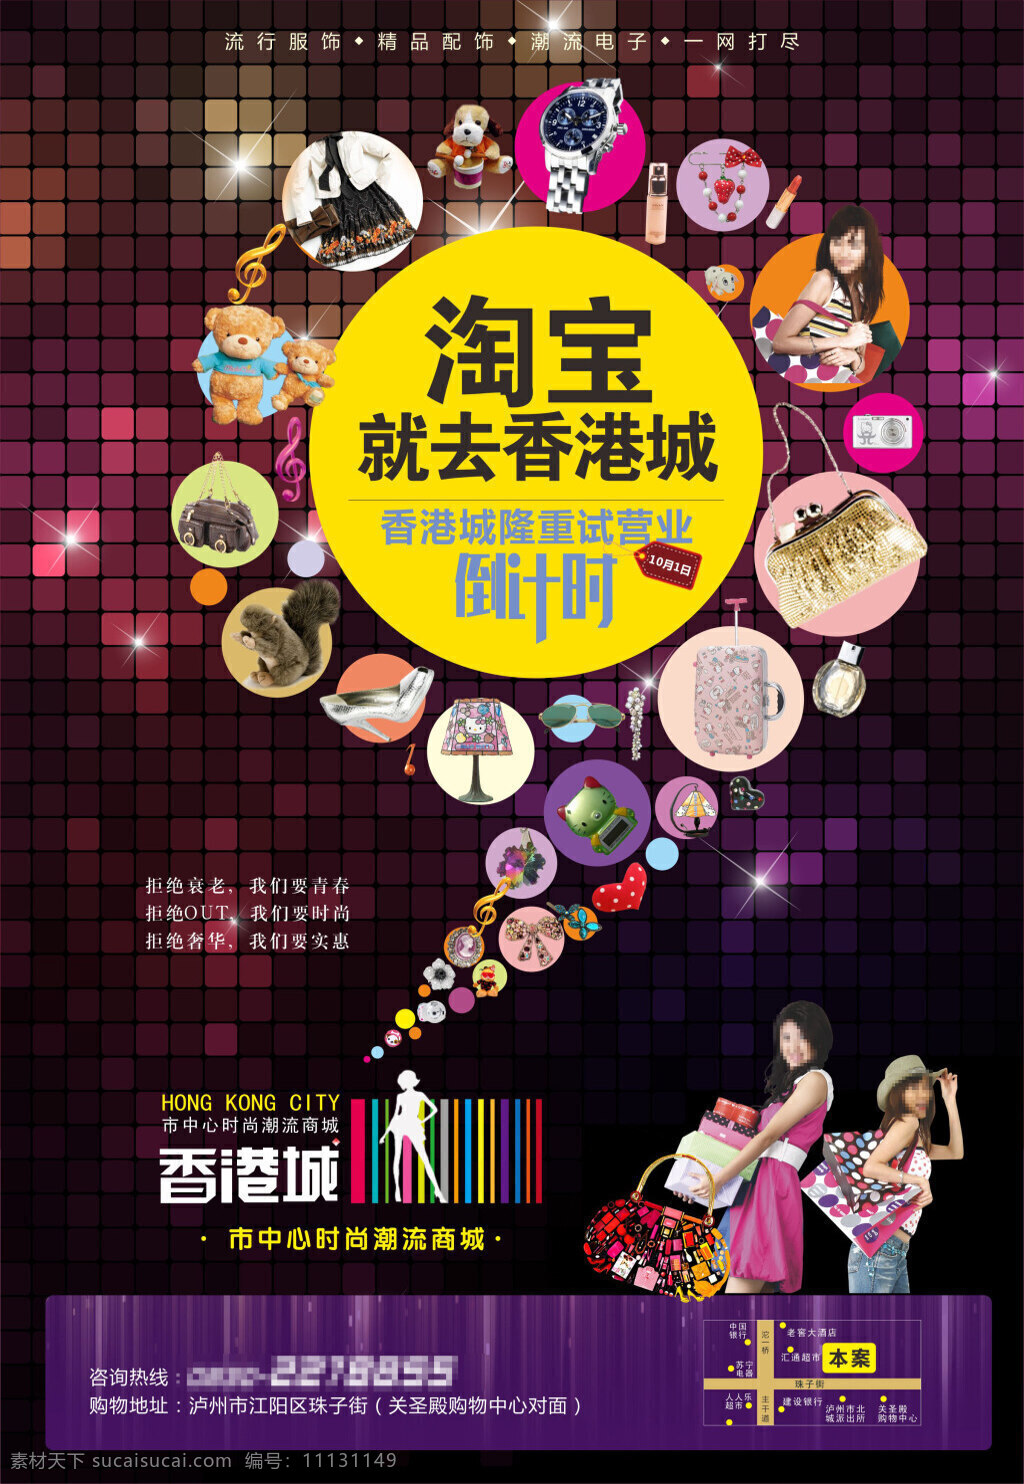 香港城 商业街 宣传海报 活动海报 创意海报 美女 时尚美女 时尚潮流 商城 海报素材 广告设计模板 黑色